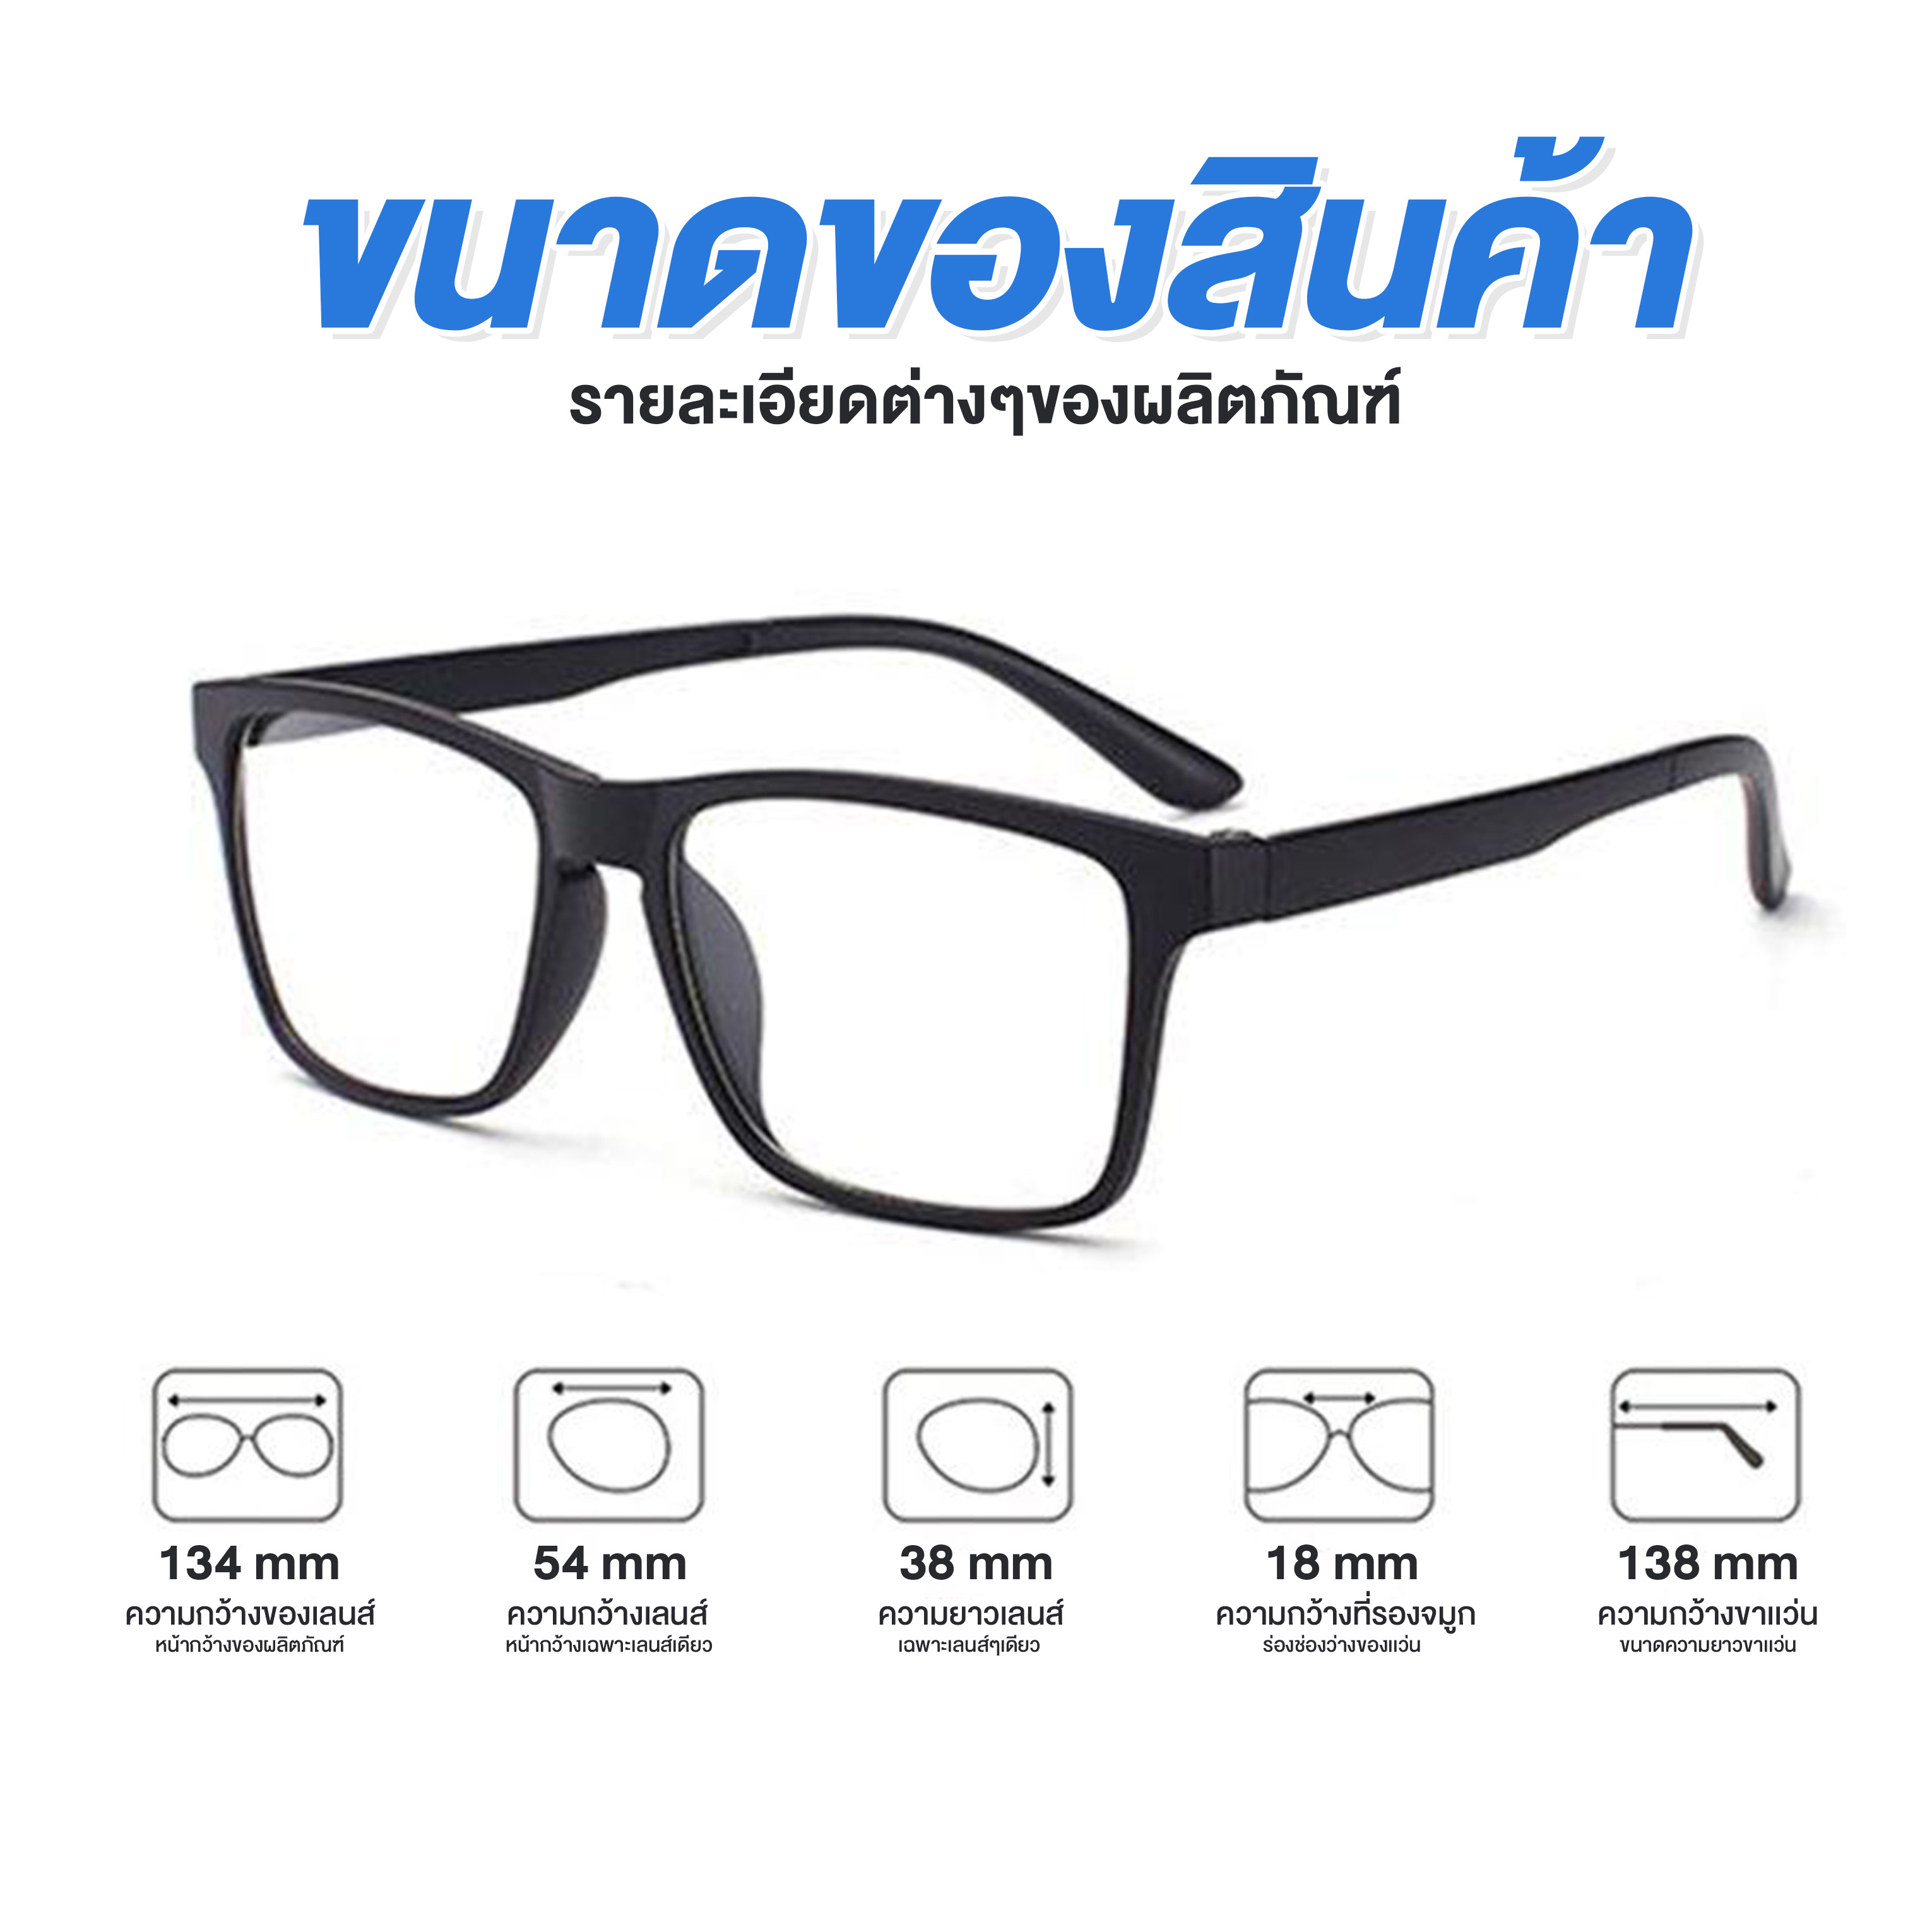 มุมมองเพิ่มเติมของสินค้า ส่งไว! (2-3วันได้รับ) แว่นตากันแดด รุ่น 2202A เปลี่ยนสีเลนส์ได้ แว่นกันUV แว่นกันยูวี แว่นตา พร้อมเลนส์ครบชุด 5 เลนส์ คละสี แว่นกันแดดแม่เหล็ก แว่นตากันแดดทรงสปอร์ต กรอบย้อนยุค Ssses 5 lenses